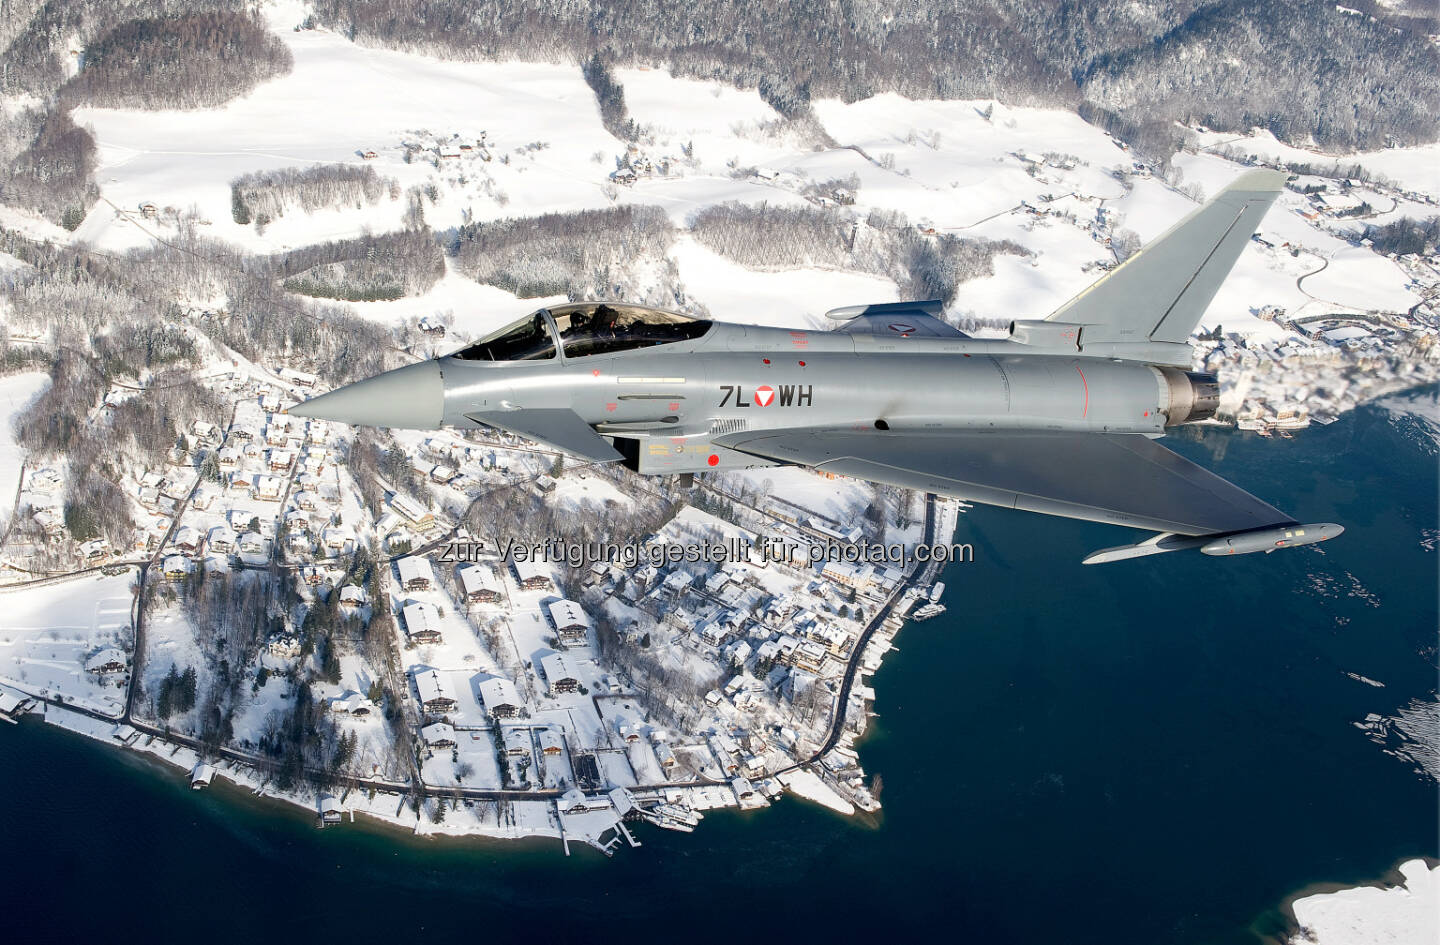 Weltwirtschaftsforum 2016 in Davos: Österreichische Eurofighter werden den Luftraum sichern : Fotocredit: Eurofighter Jagdflugzeug GmbH